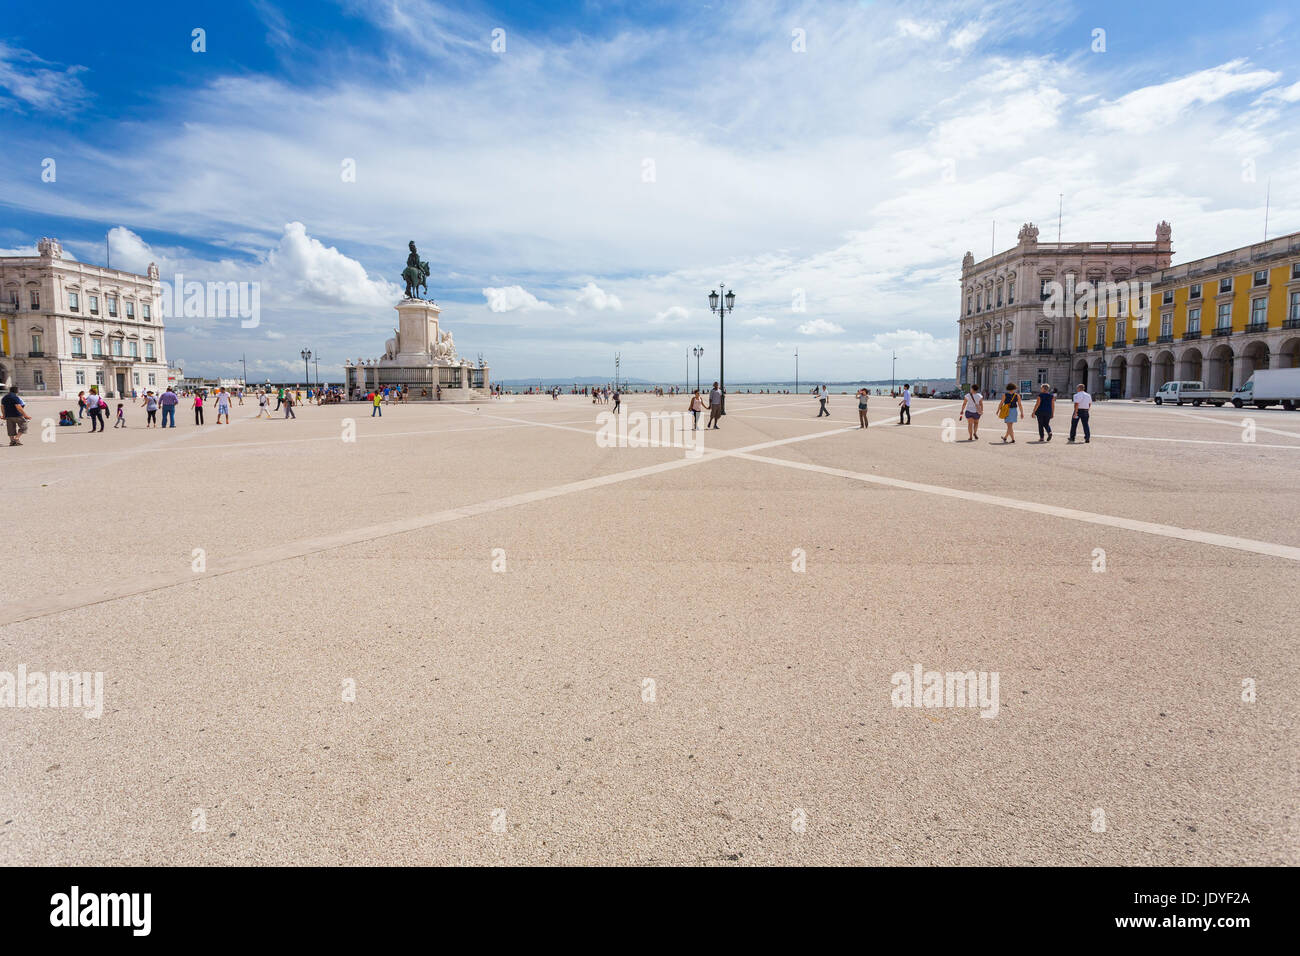 Lisbona, Portogallo - 14 Settembre 2014: Piazza del commercio a Lisbona Portogallo il 14 settembre 2014. È una delle piazze più importanti ed è stata risolta la terra dove il Palazzo Reale di Lisbona per più di 200 anni Foto Stock